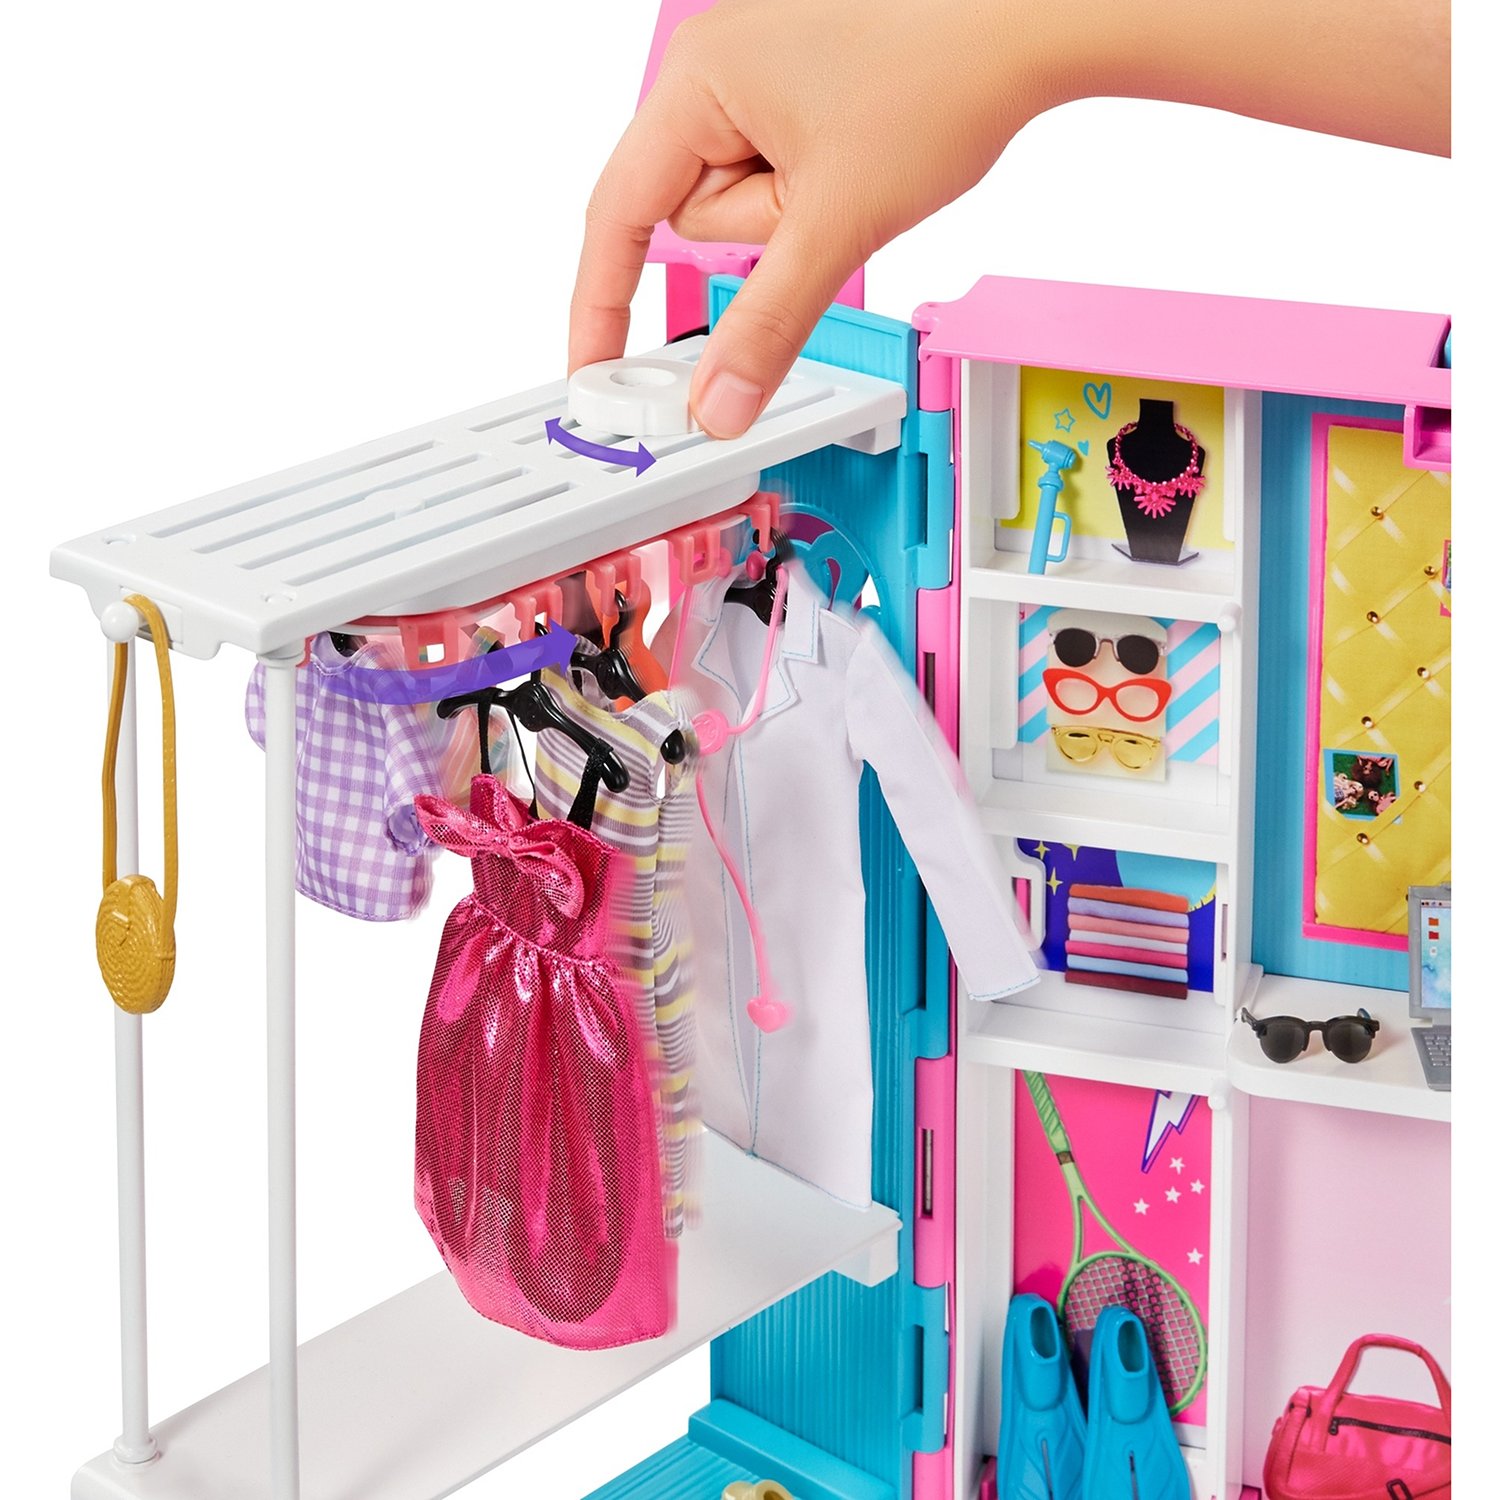 Набор игровой Barbie Игра с модой Гардероб мечты ,GBK10